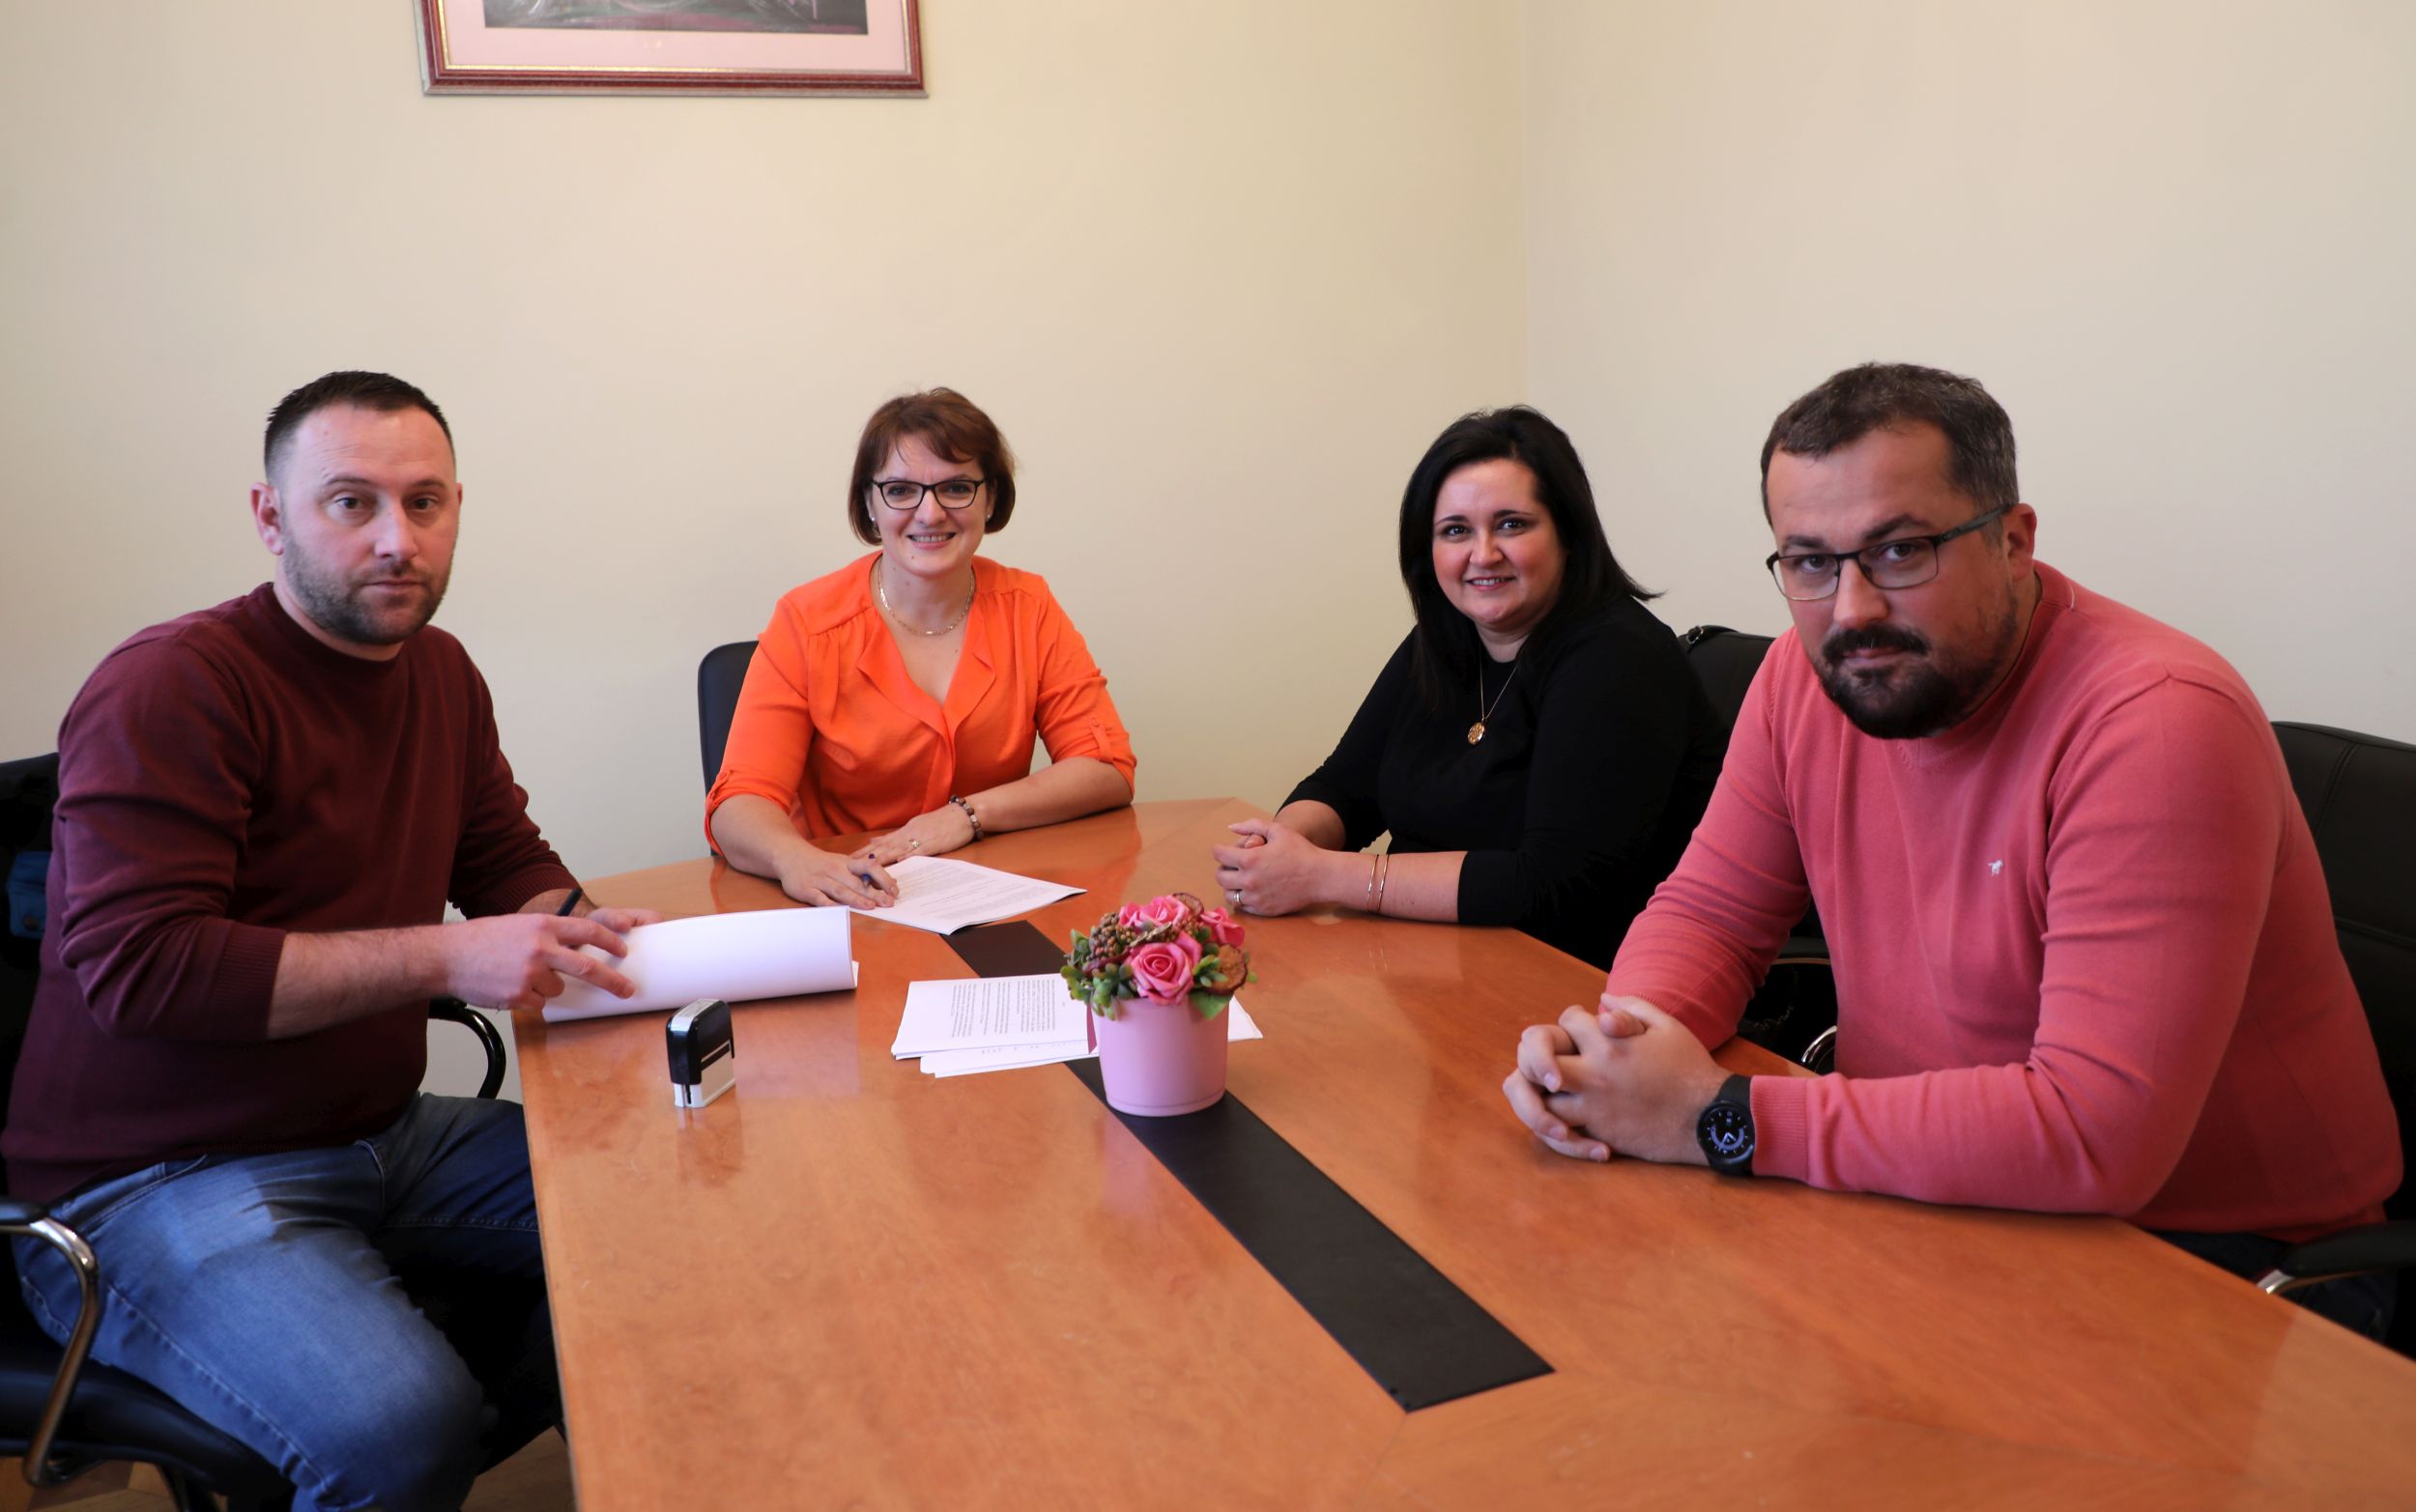 Potpisan ugovor za novi vrtić u Kuzmici: “Djeca i ulaganje u zajednicu su uvijek prioritet”